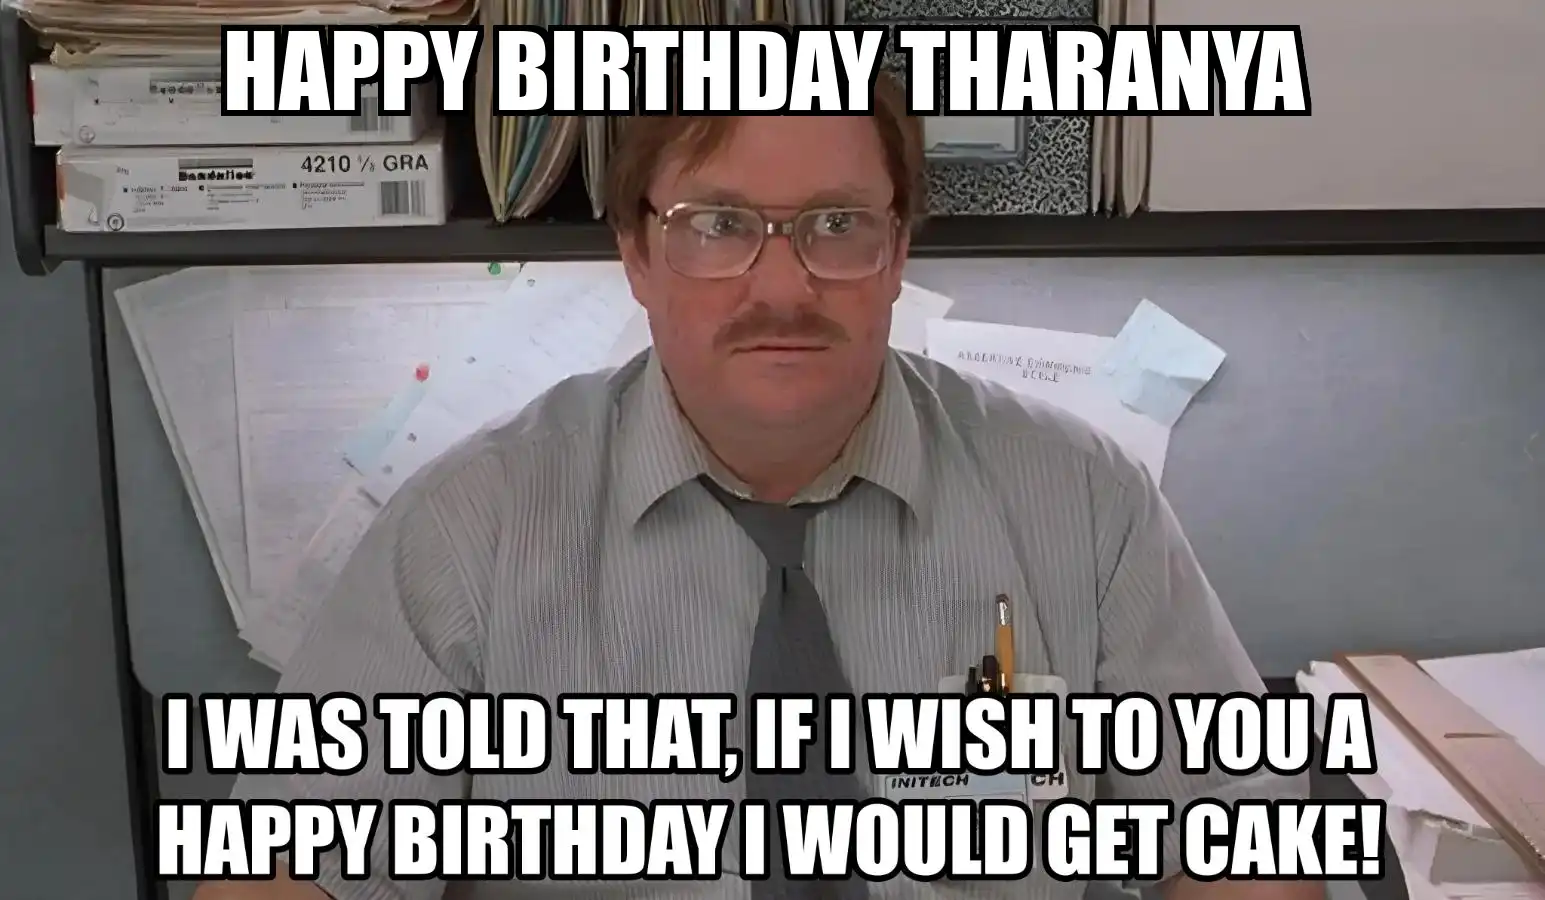 Happy Birthday Tharanya I Would Get A Cake Meme